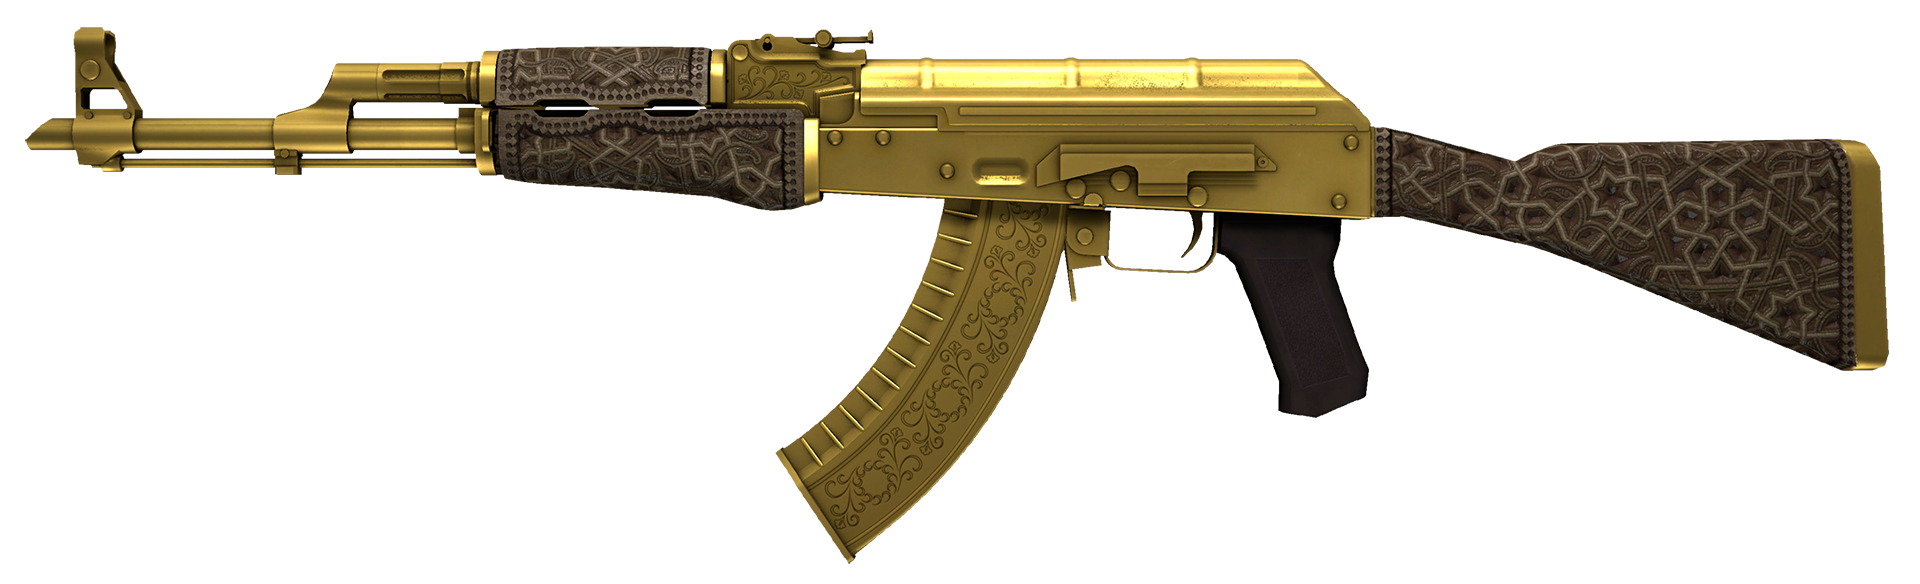 Ак47 кс2. AK-47 | Gold Arabesque. AK-47 | поверхностная закалка. АК 47 гидропоника. АК-47 поверхностная закалка КС 2.